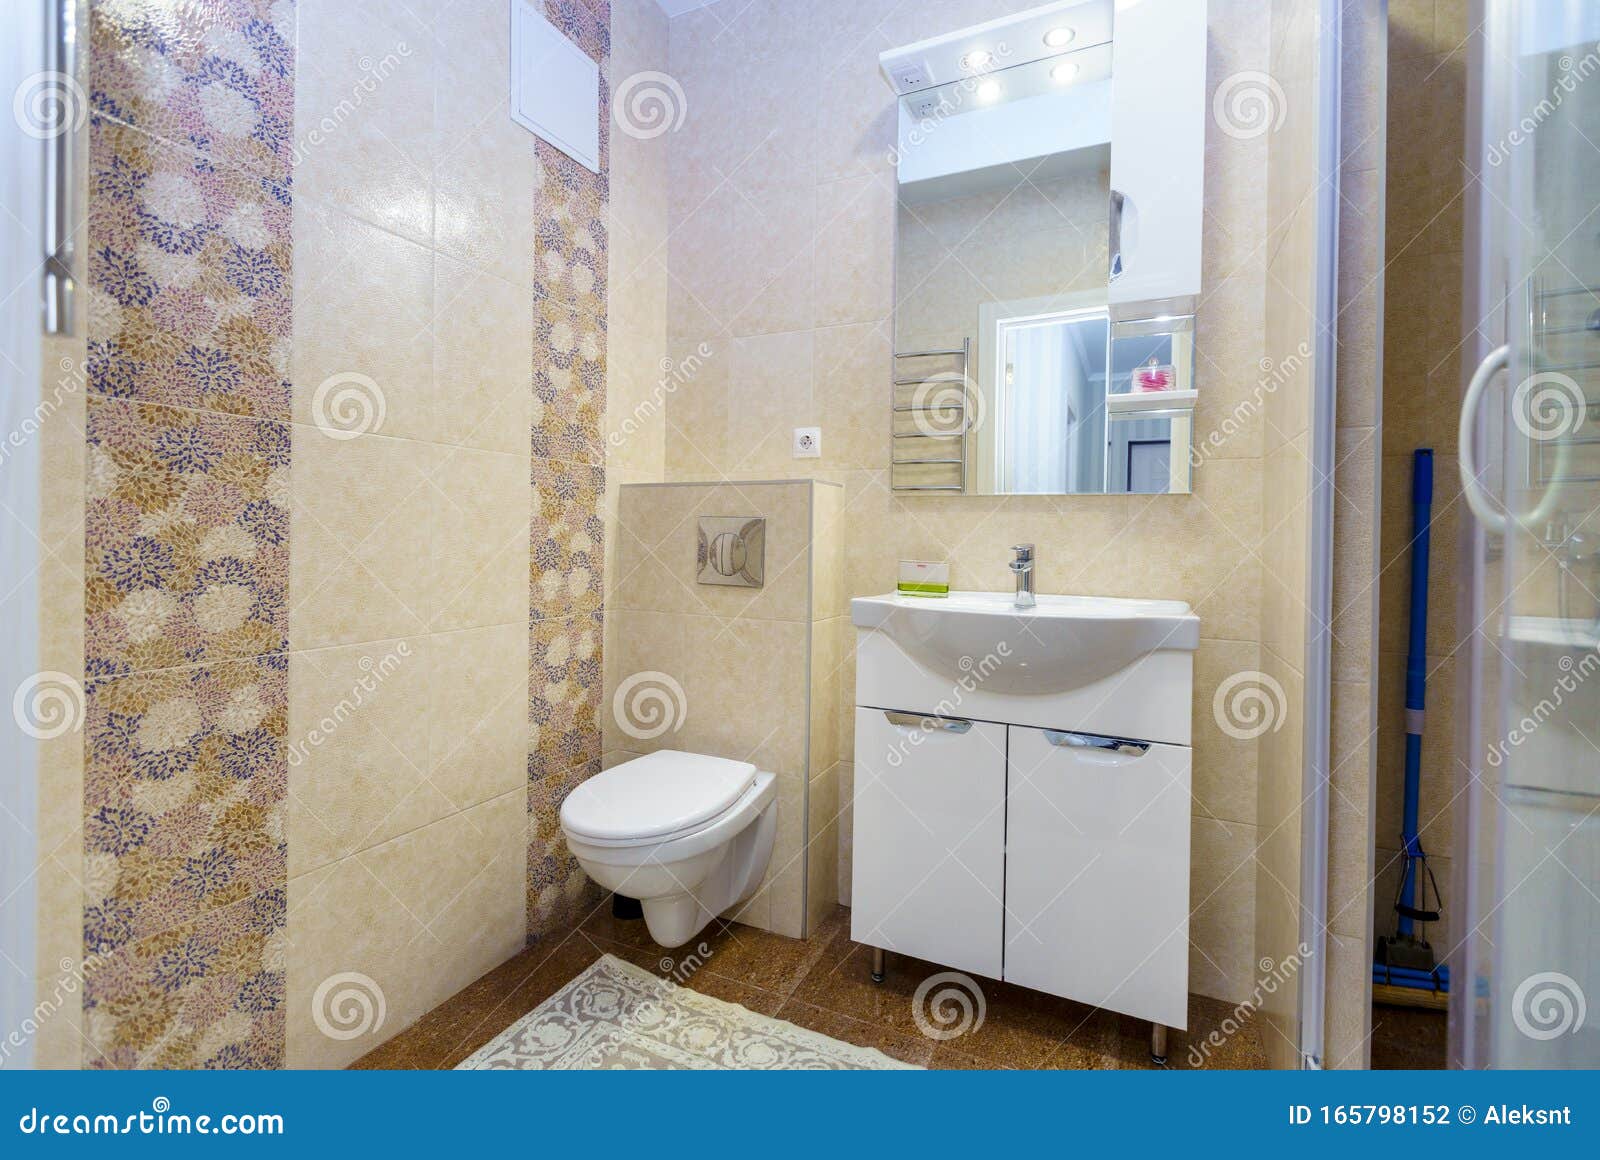 Cerámica blanco azulejos espejo de pared ducha baño WC cocina 22b-010410 esteras